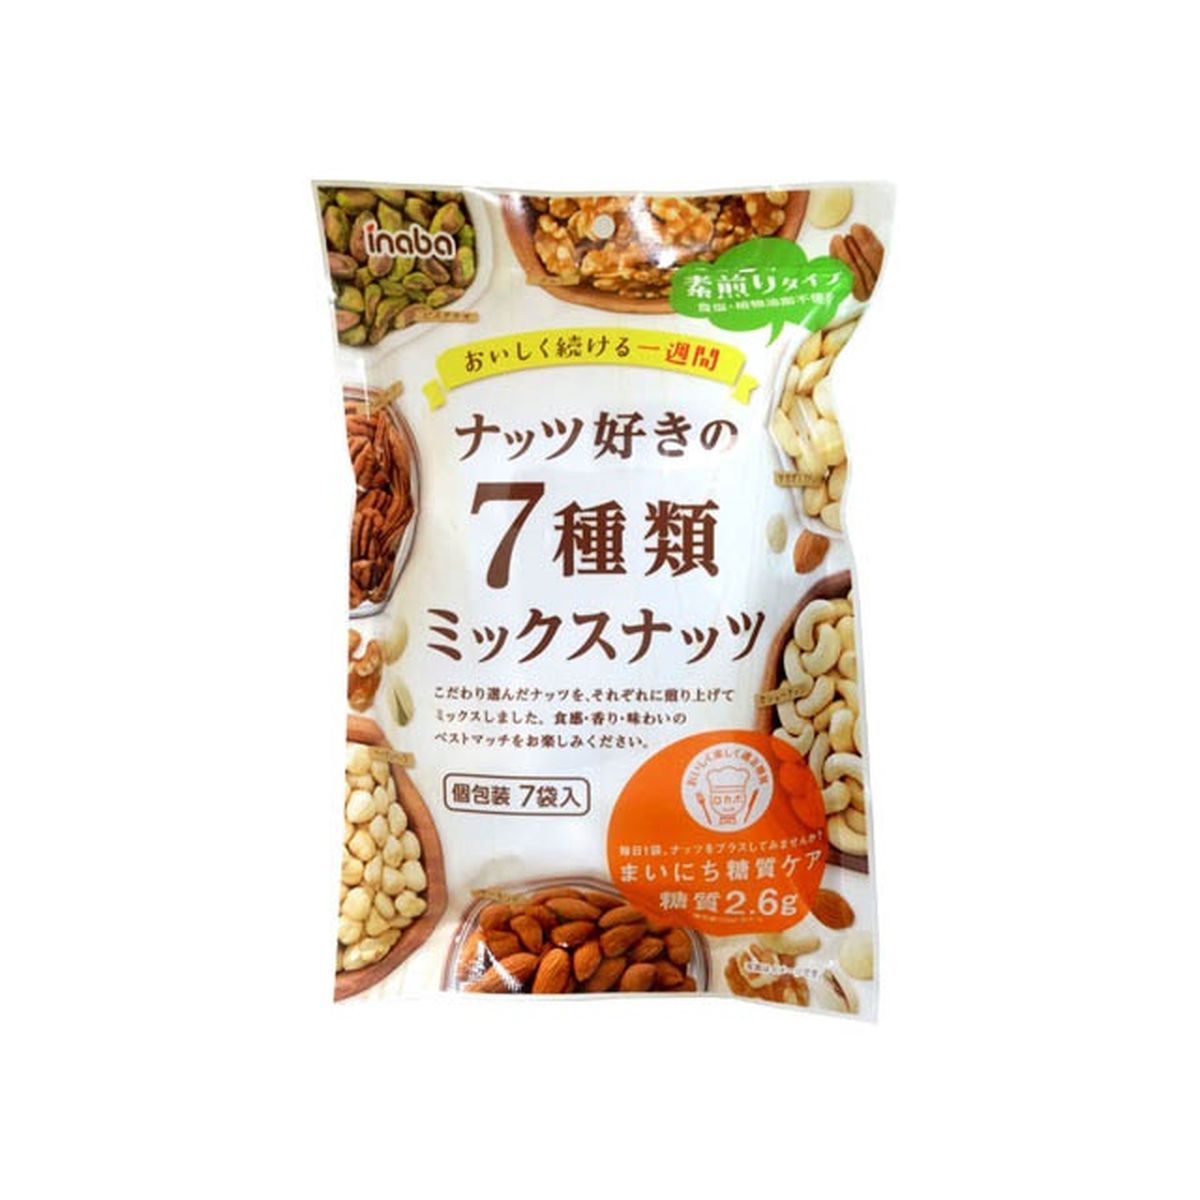 【12個入り】稲葉ピーナツ ナッツ好きの７種類ミックスナッツ 154g